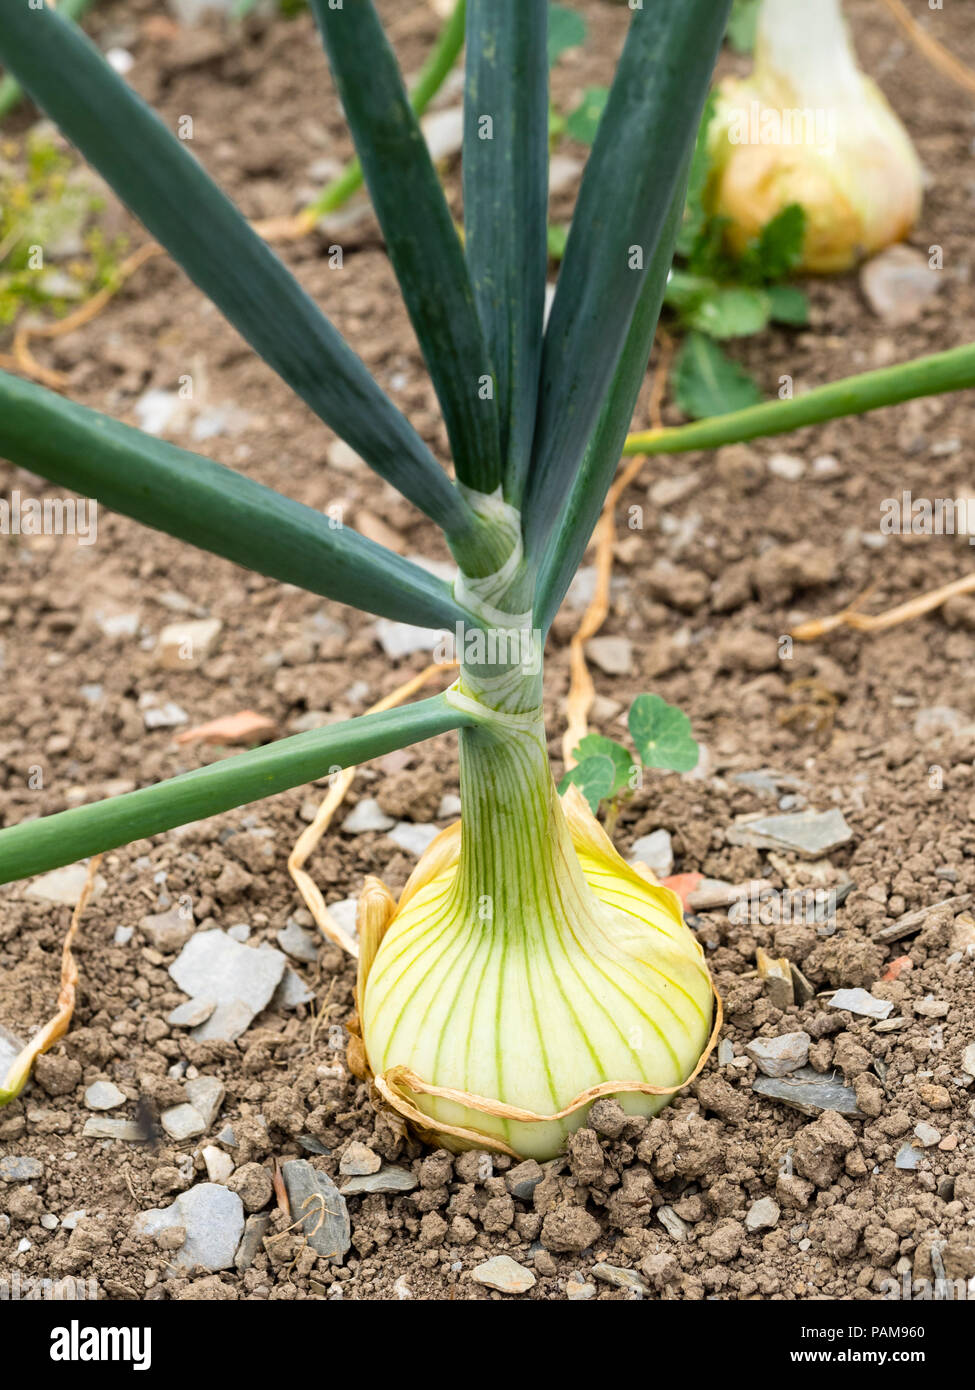 Round white bulb of the maincrop onion, Allium cepa 'Sturon' Stock Photo